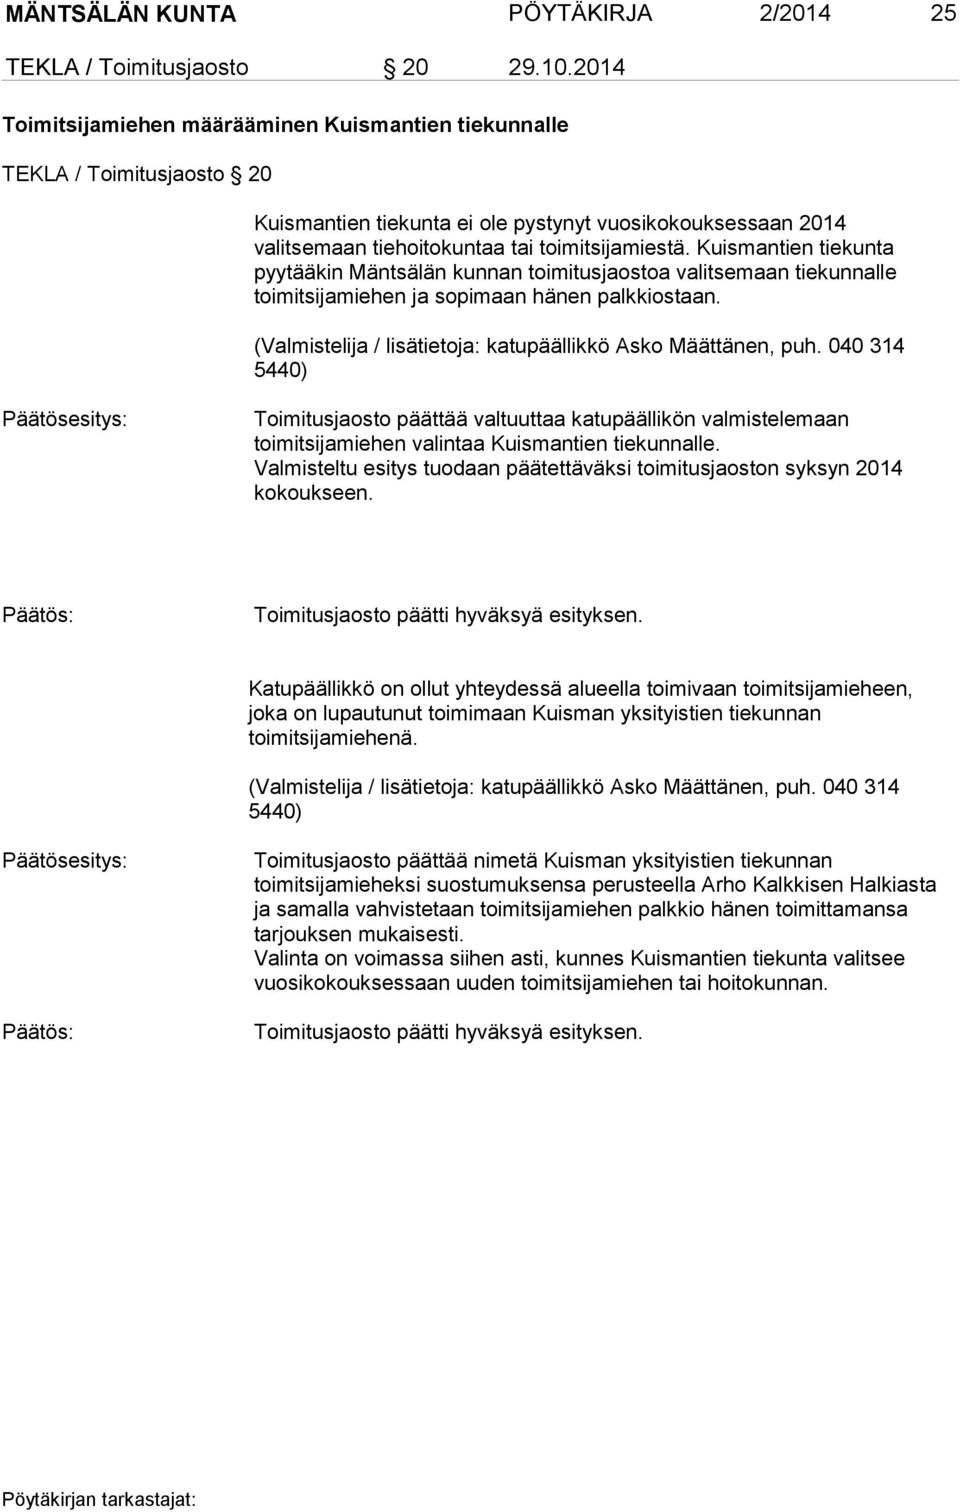 Kuismantien tiekunta pyytääkin Mäntsälän kunnan toimitusjaostoa valitsemaan tiekunnalle toimitsijamiehen ja sopimaan hänen palkkiostaan. (Valmistelija / lisätietoja: katupäällikkö Asko Määttänen, puh.